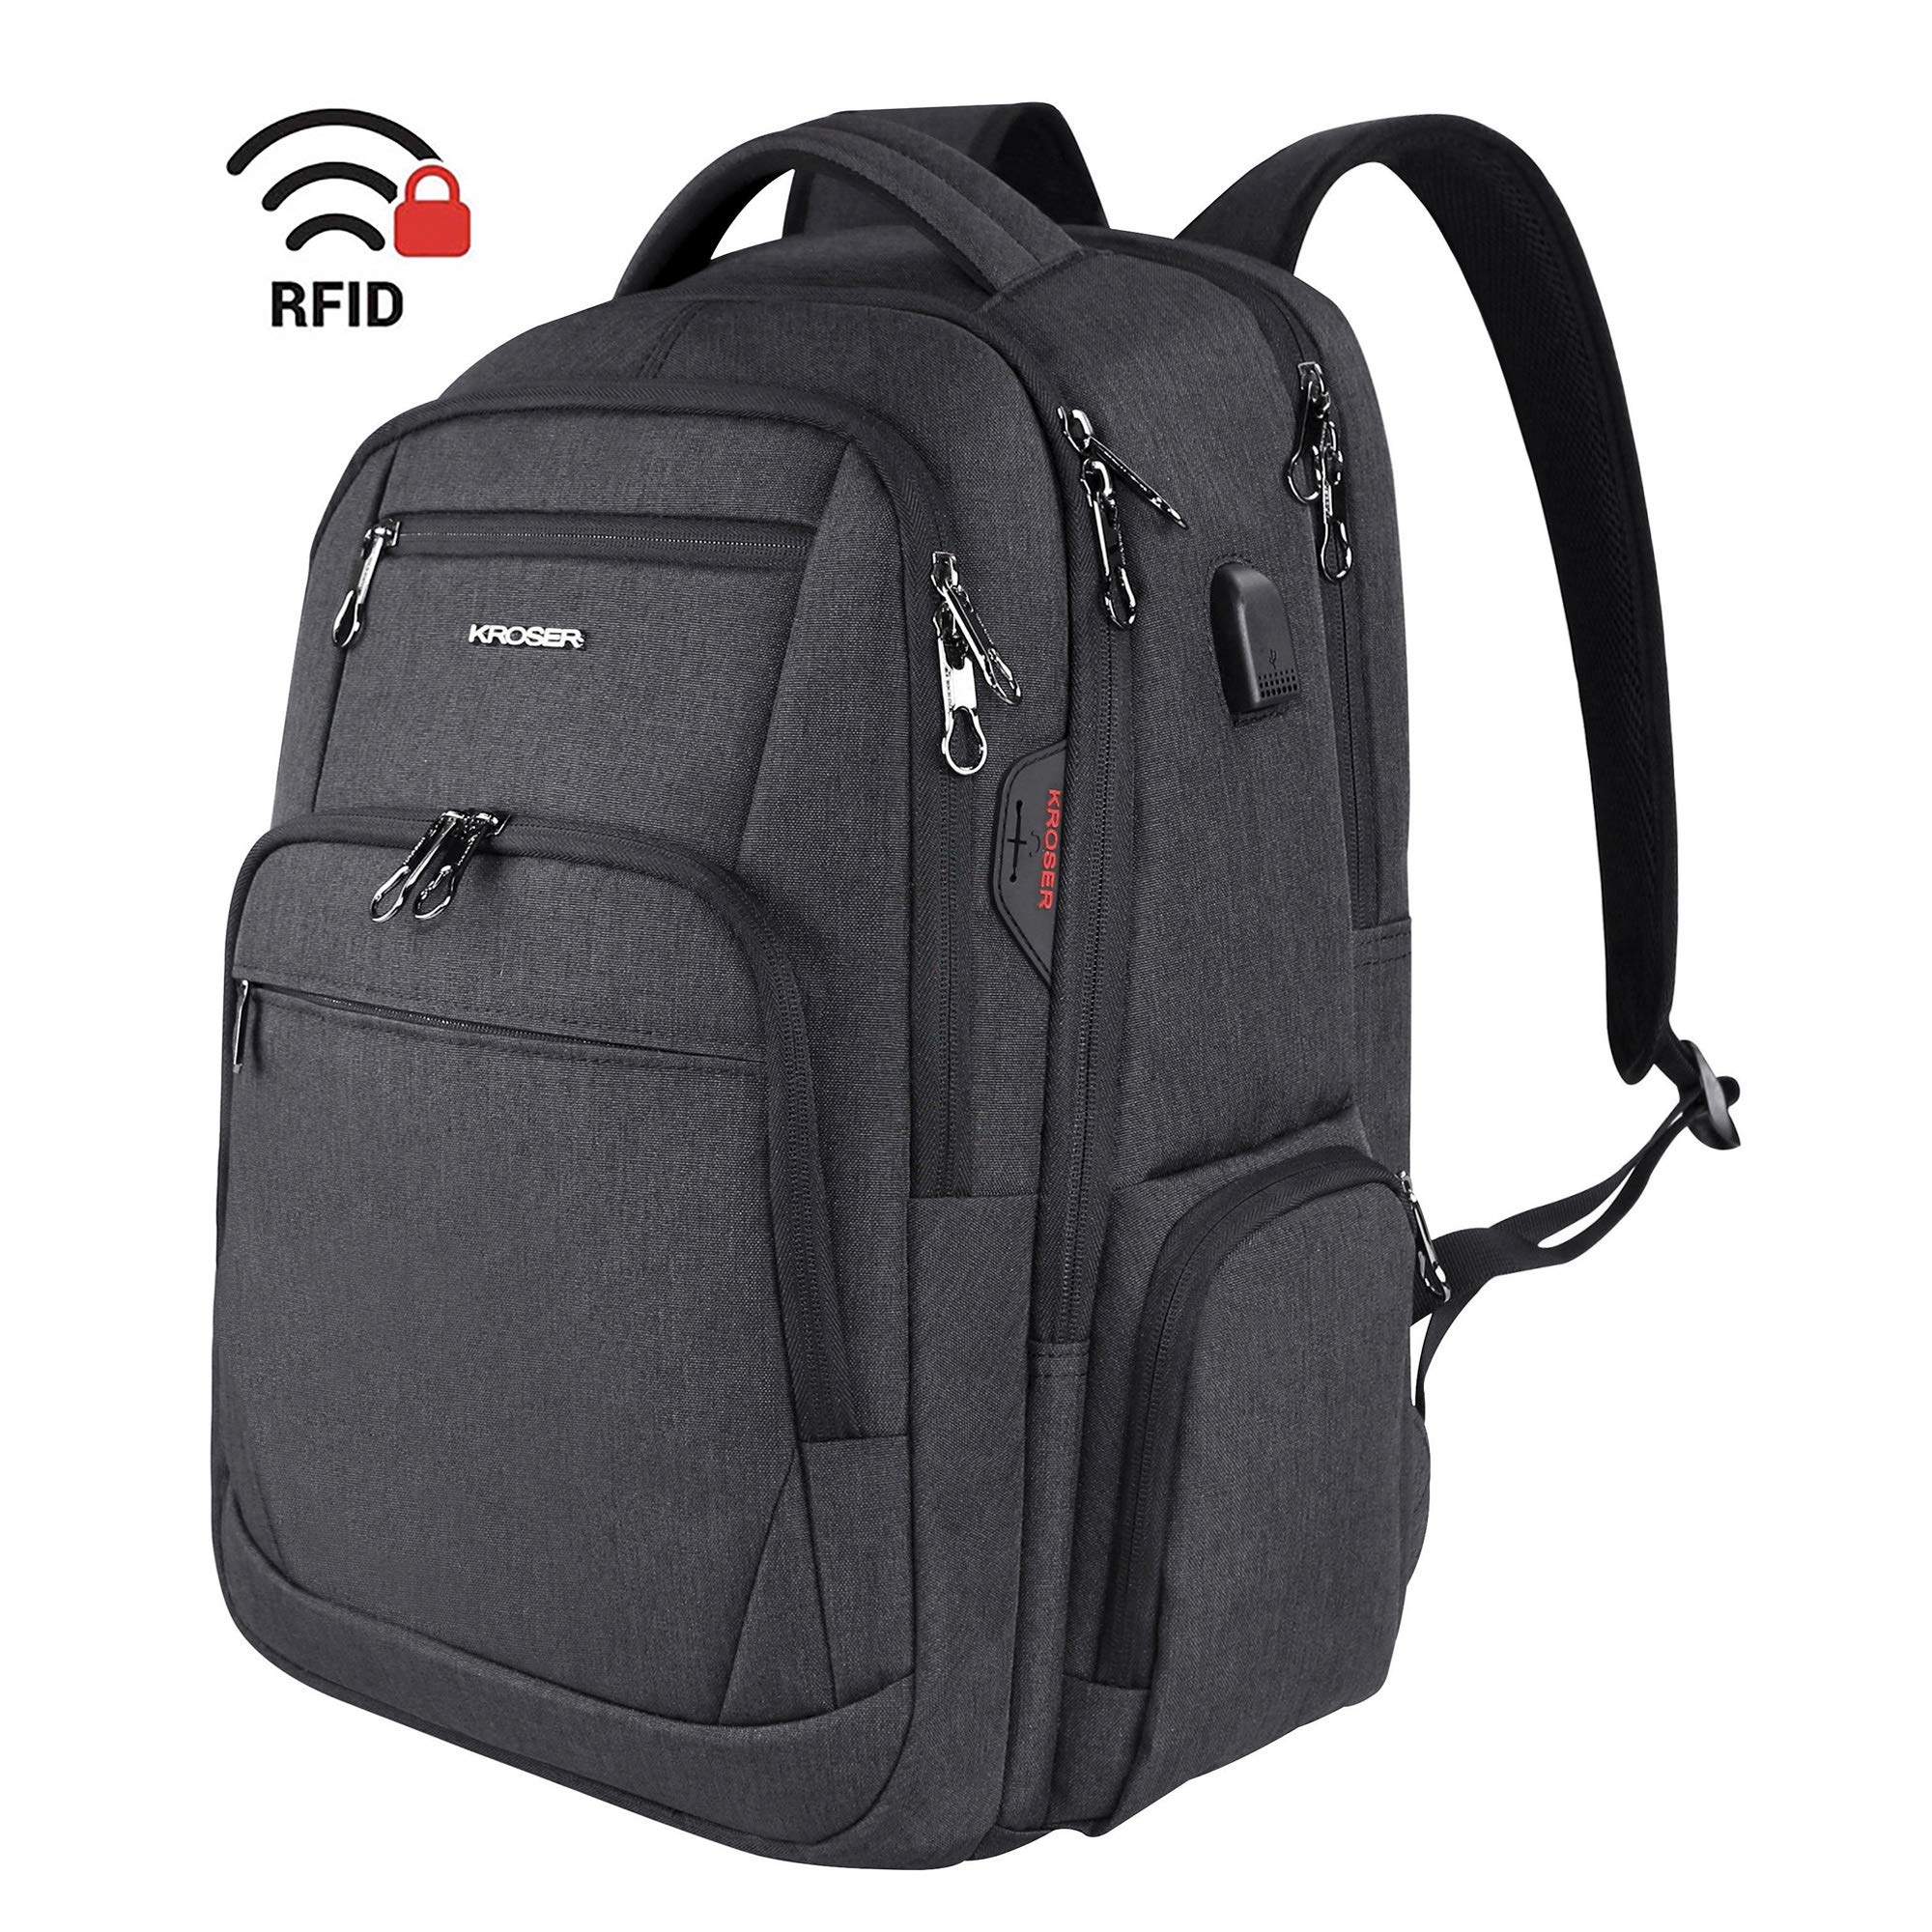 RFID-Blocking Travel MacBook Backpack